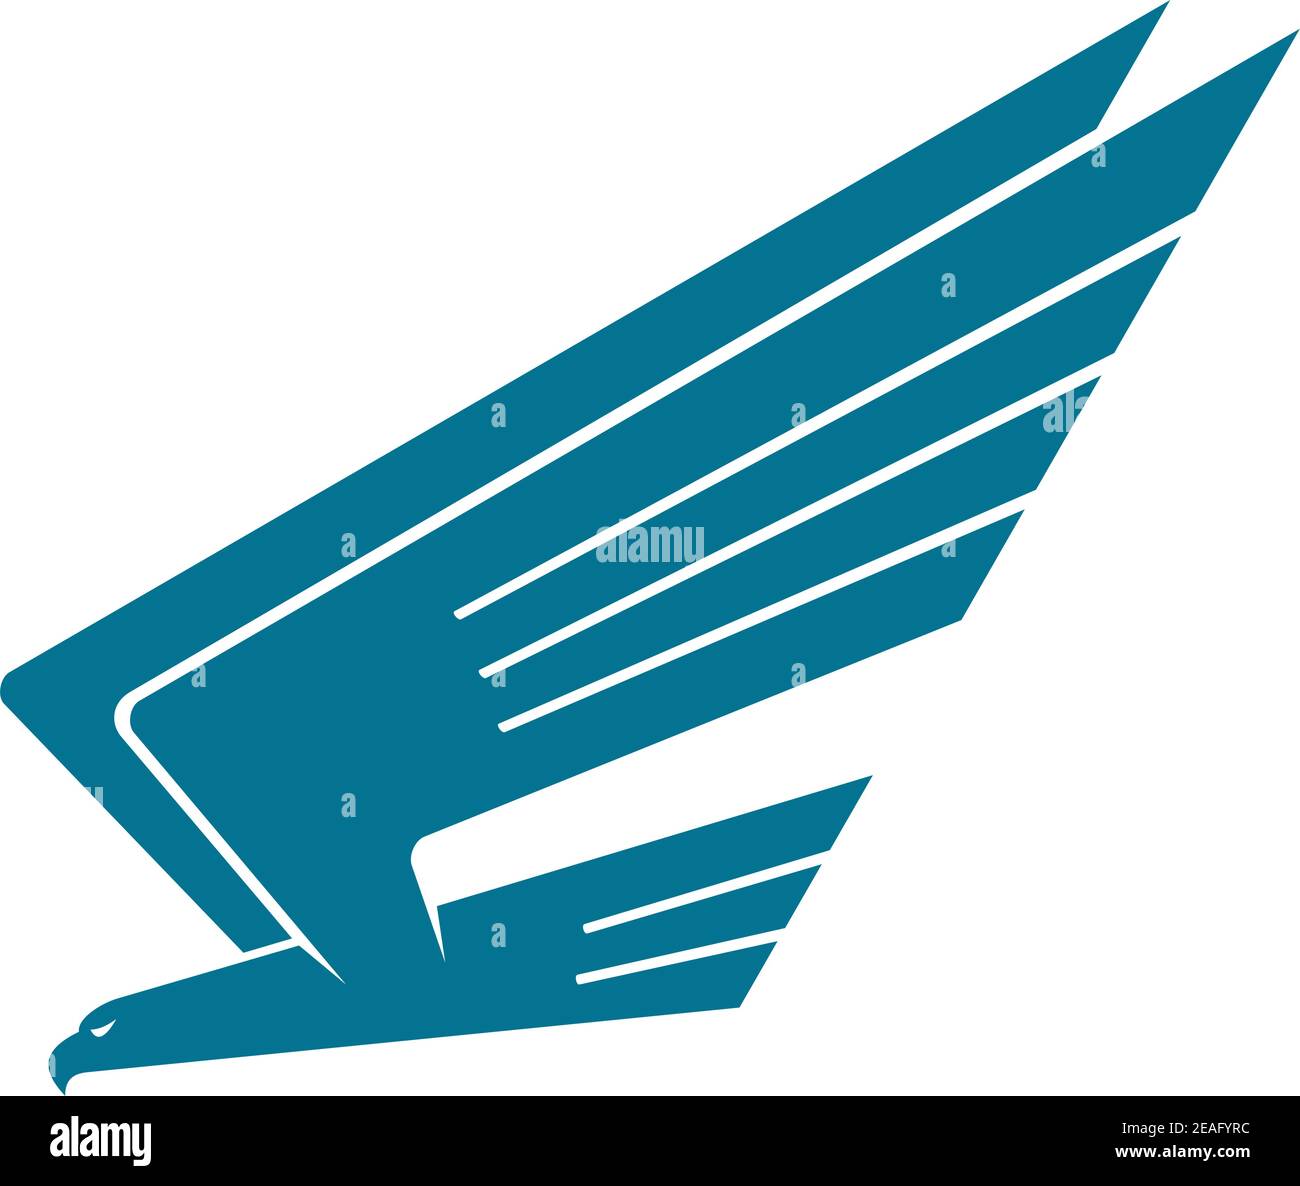 Immagine vettoriale di silhoutte di un'aquila in volo che oscilla sulla sua preda con ali rialzate, isolate su bianco Illustrazione Vettoriale